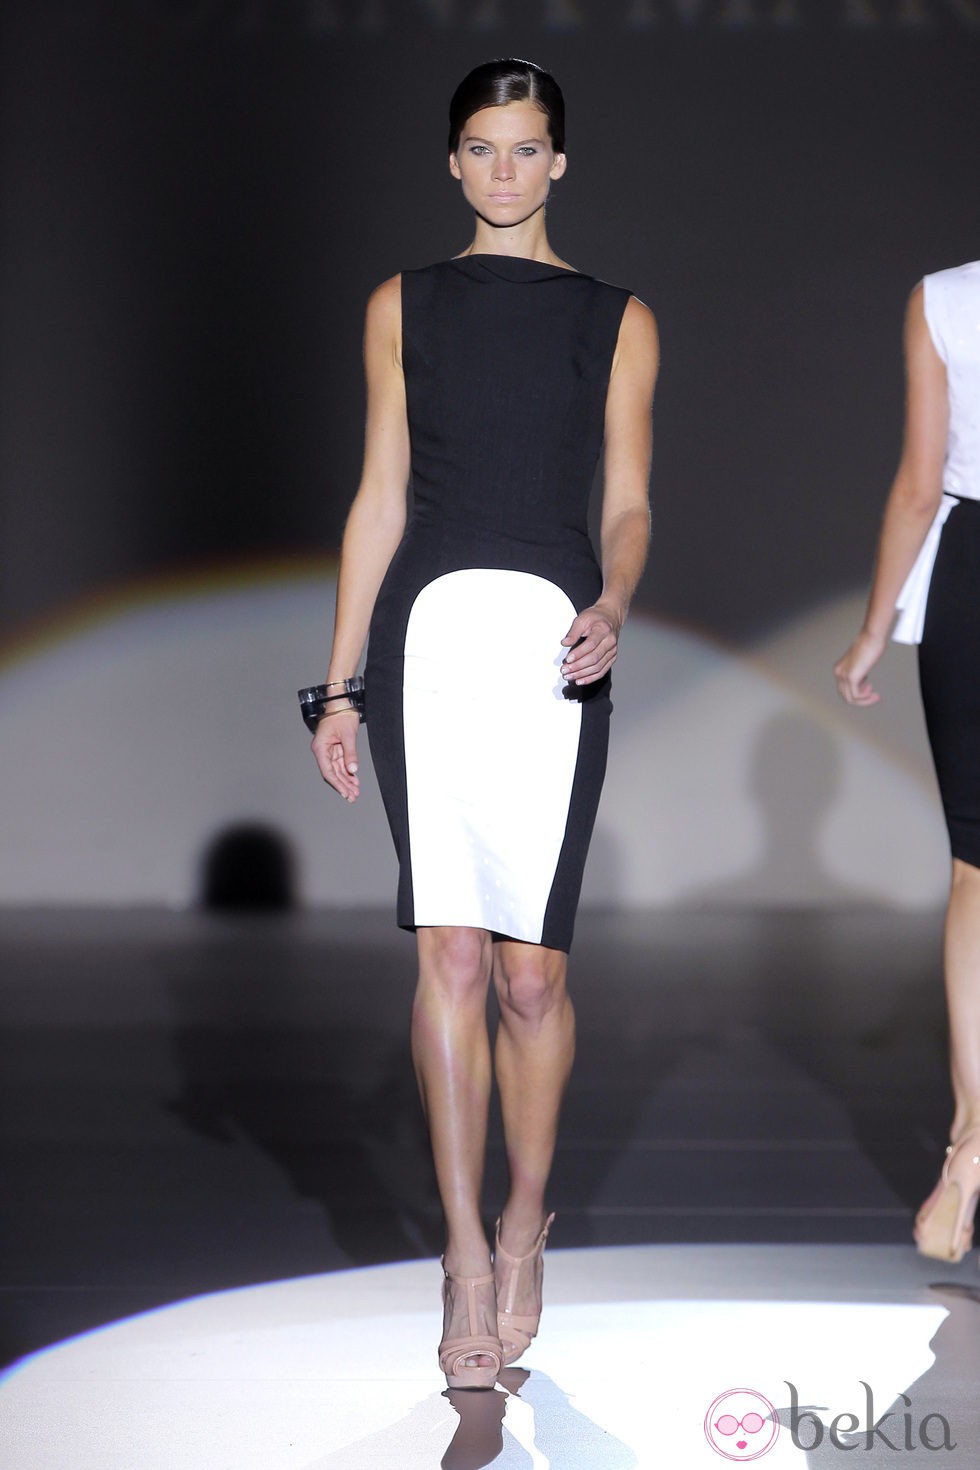 Vestido blanco y negro de Juana Martín, colección primavera/verano 2013